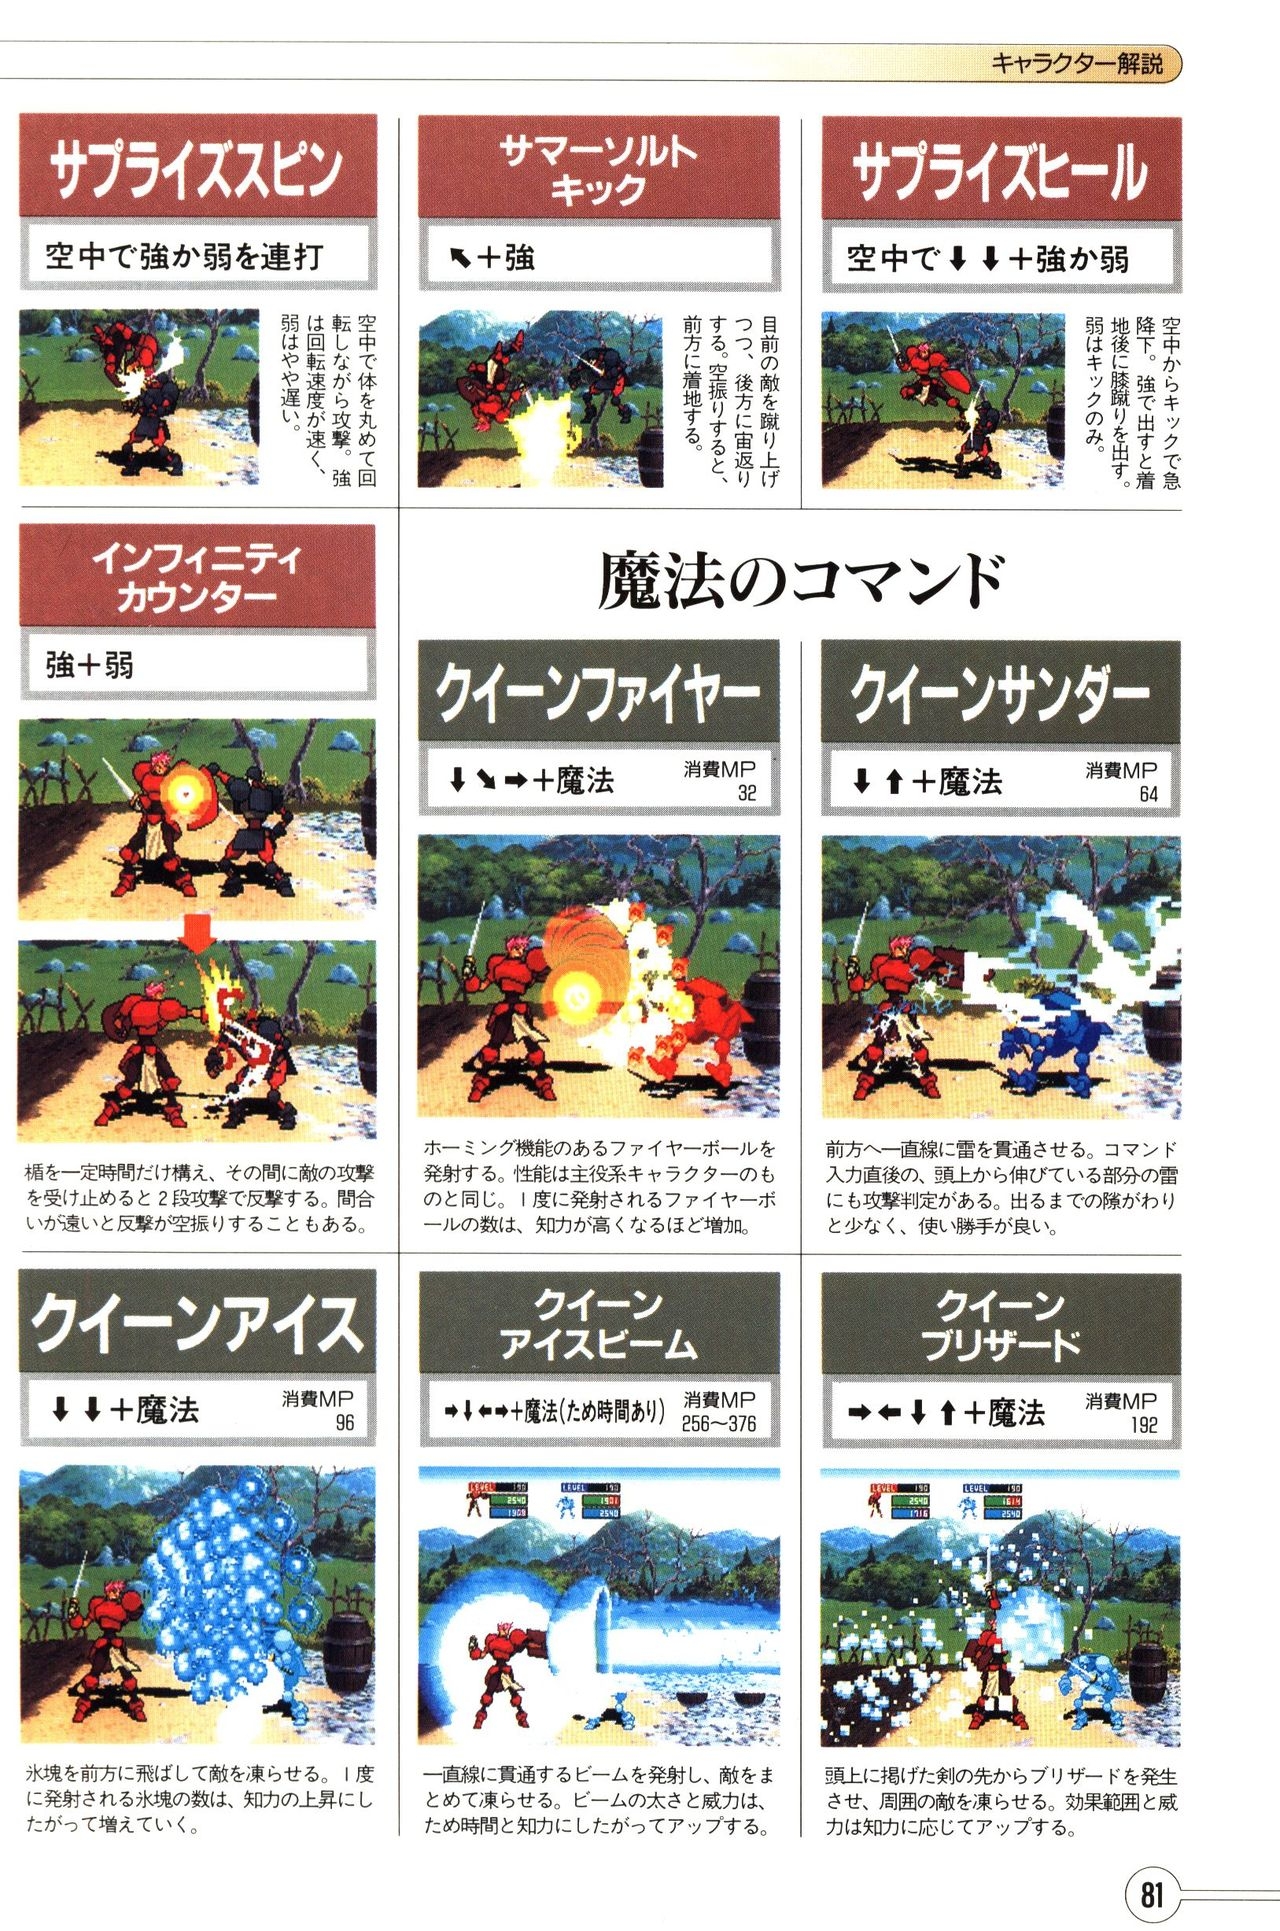 Guardian Heroes Perfect Guide (Sega Saturn magazine books) 83